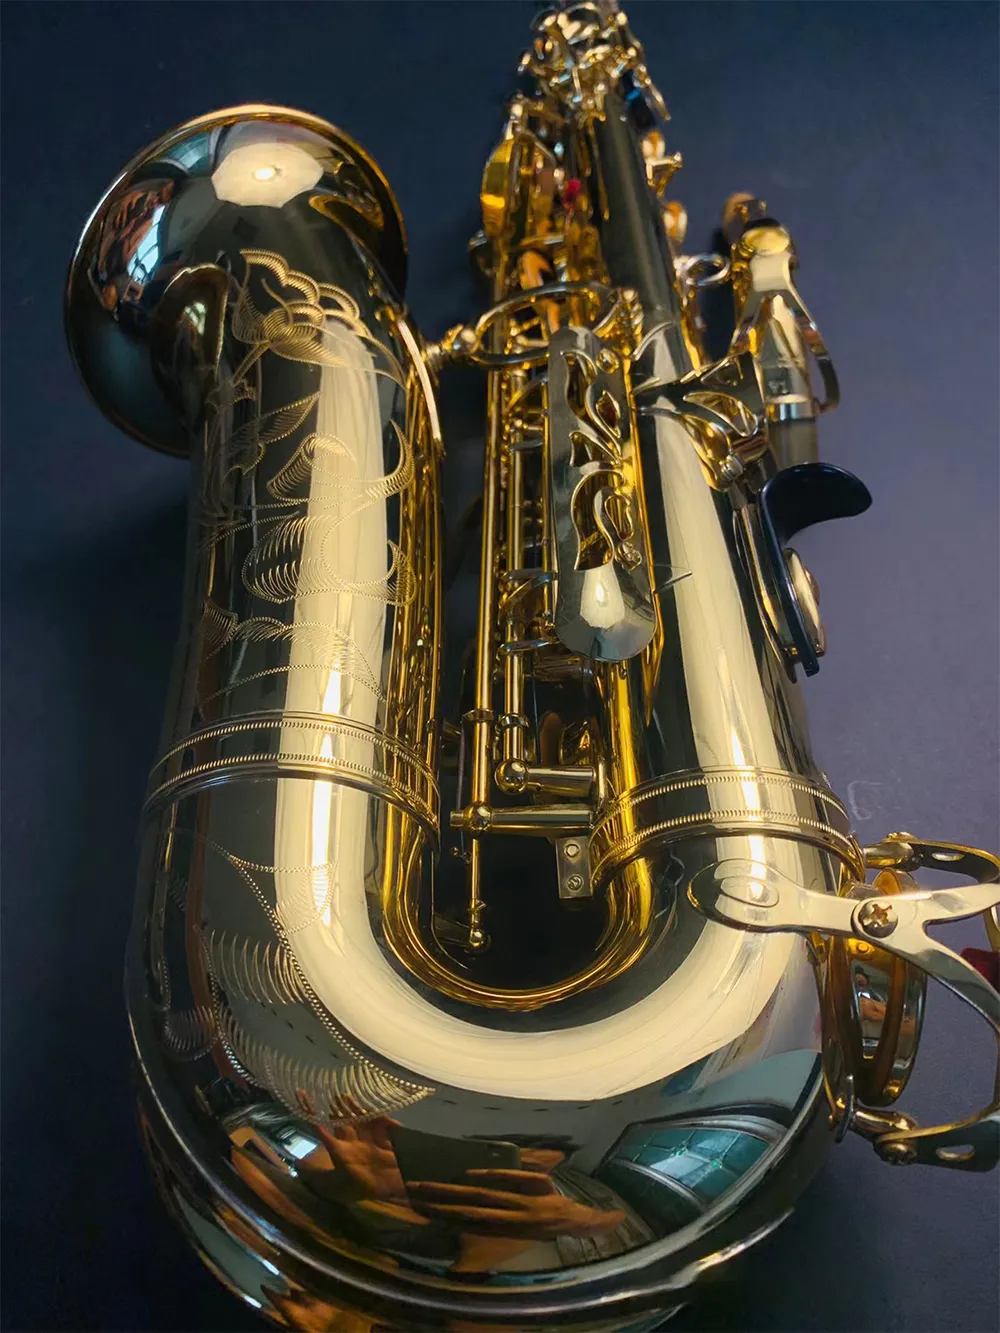 النموذج المحترف الأصلي 82 النموذج لأسفل e ضبط alto ساكسفون النغمة من الدرجة الاحترافية Alto Sax Jazz أداة